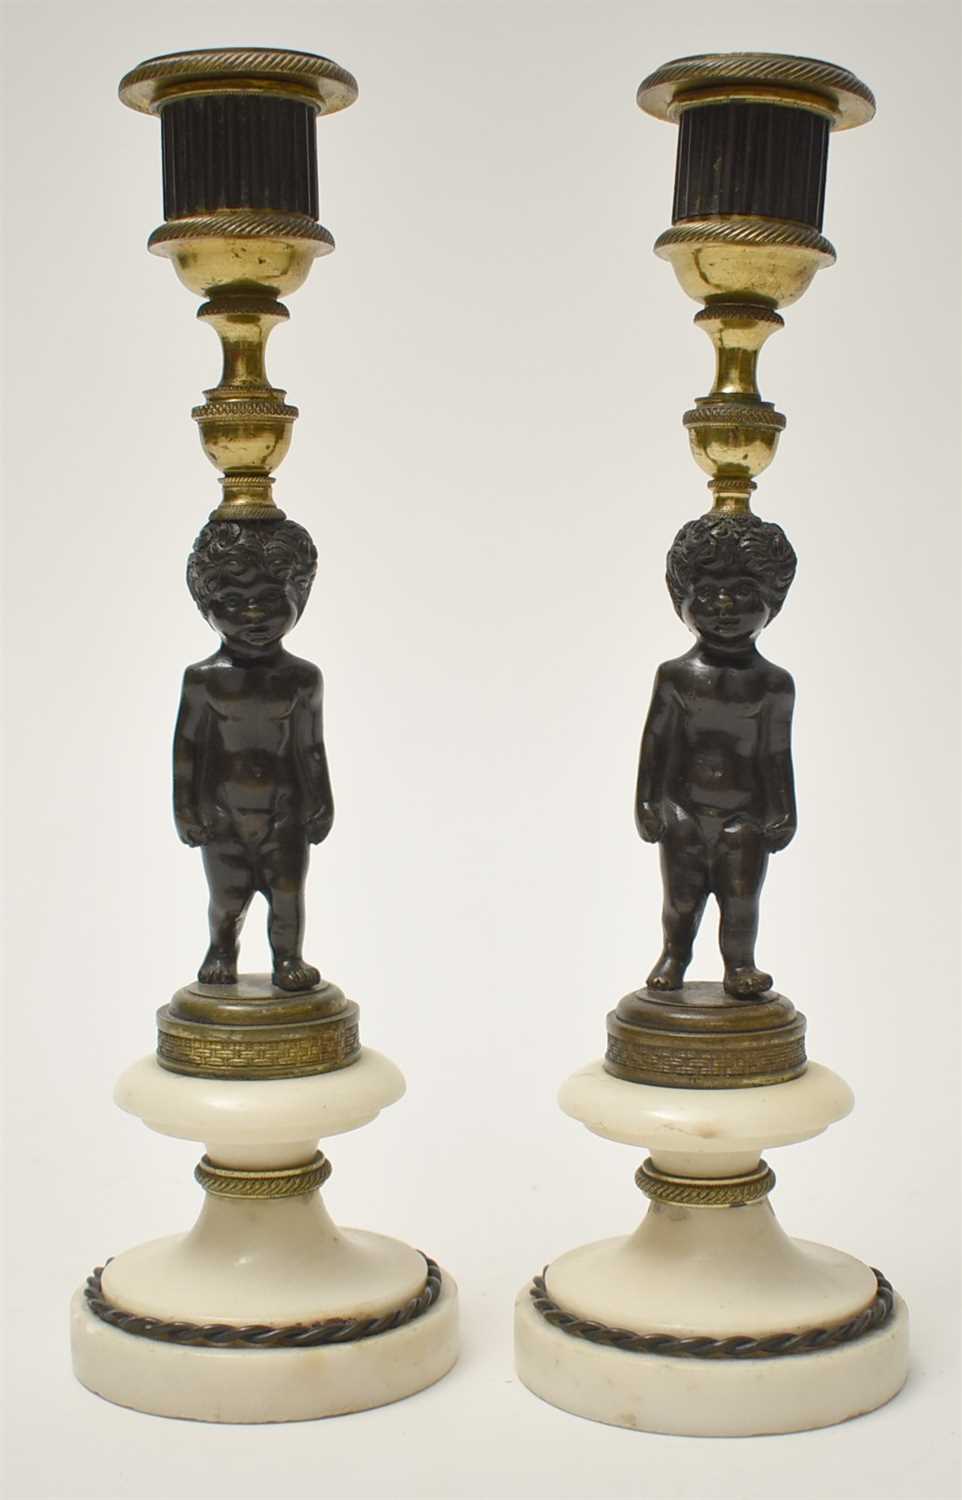 Lot 446 - Bronze candlesticks